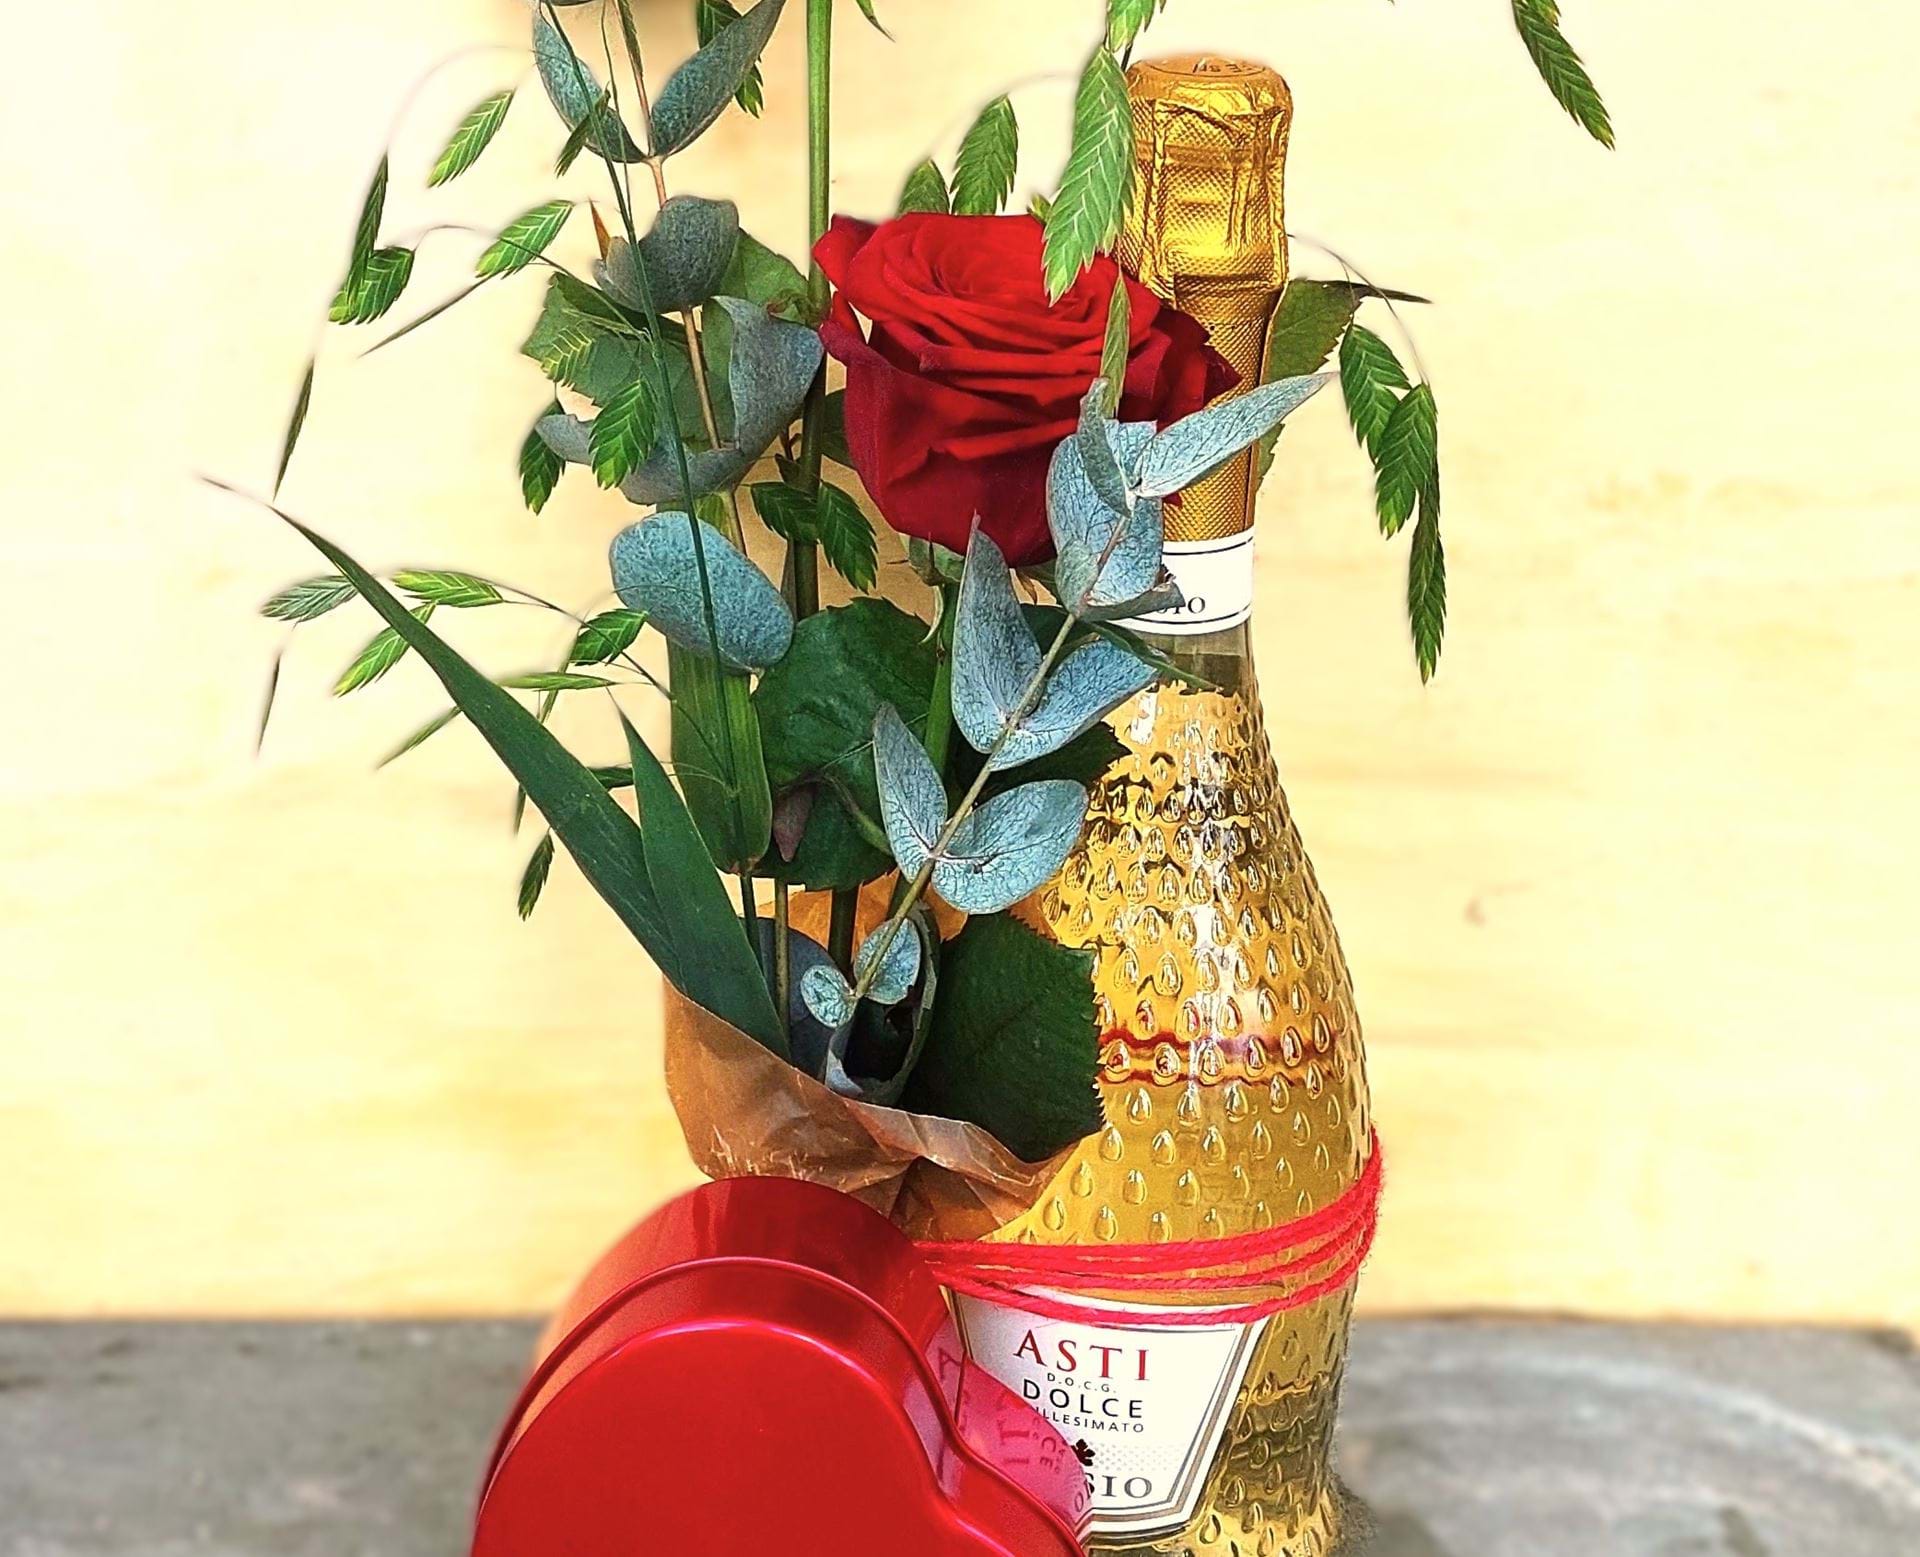 Mors dags gave med Asti, rødt chokolade hjerte og røde roser